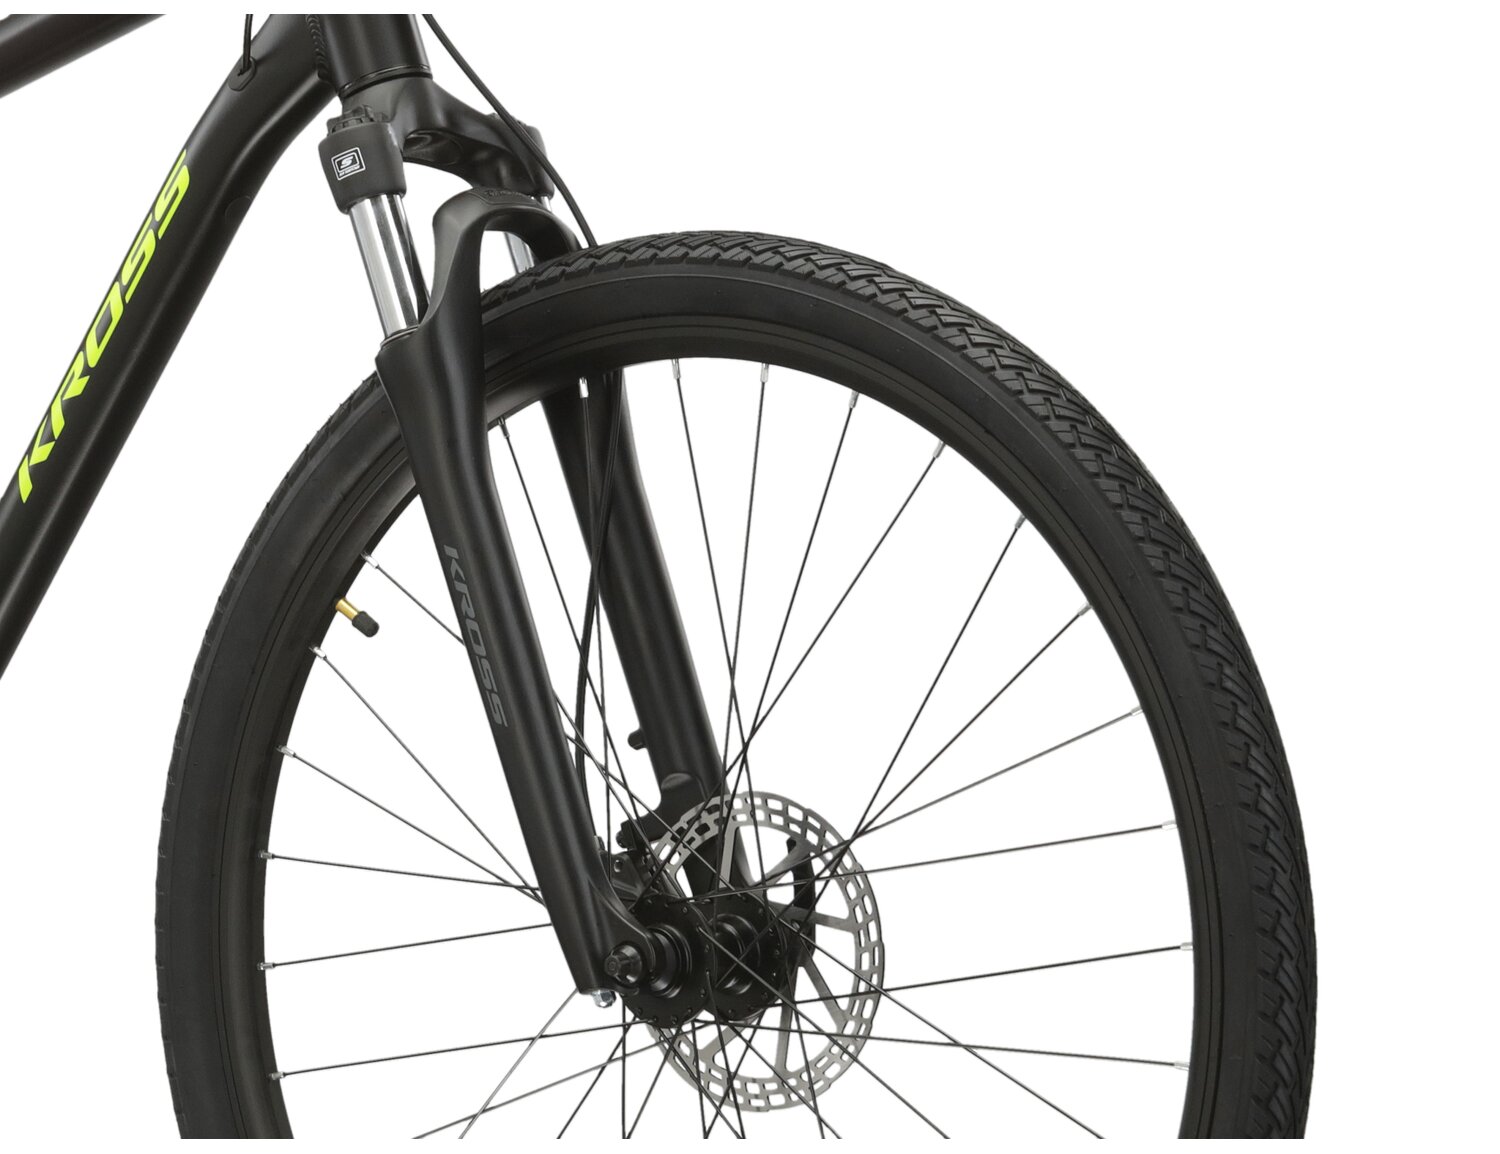 Aluminowa rama, amortyzowany widelec SR SUNTOUR NEX oraz opony Wanda w rowerze crossowym KROSS Evado 4.0 